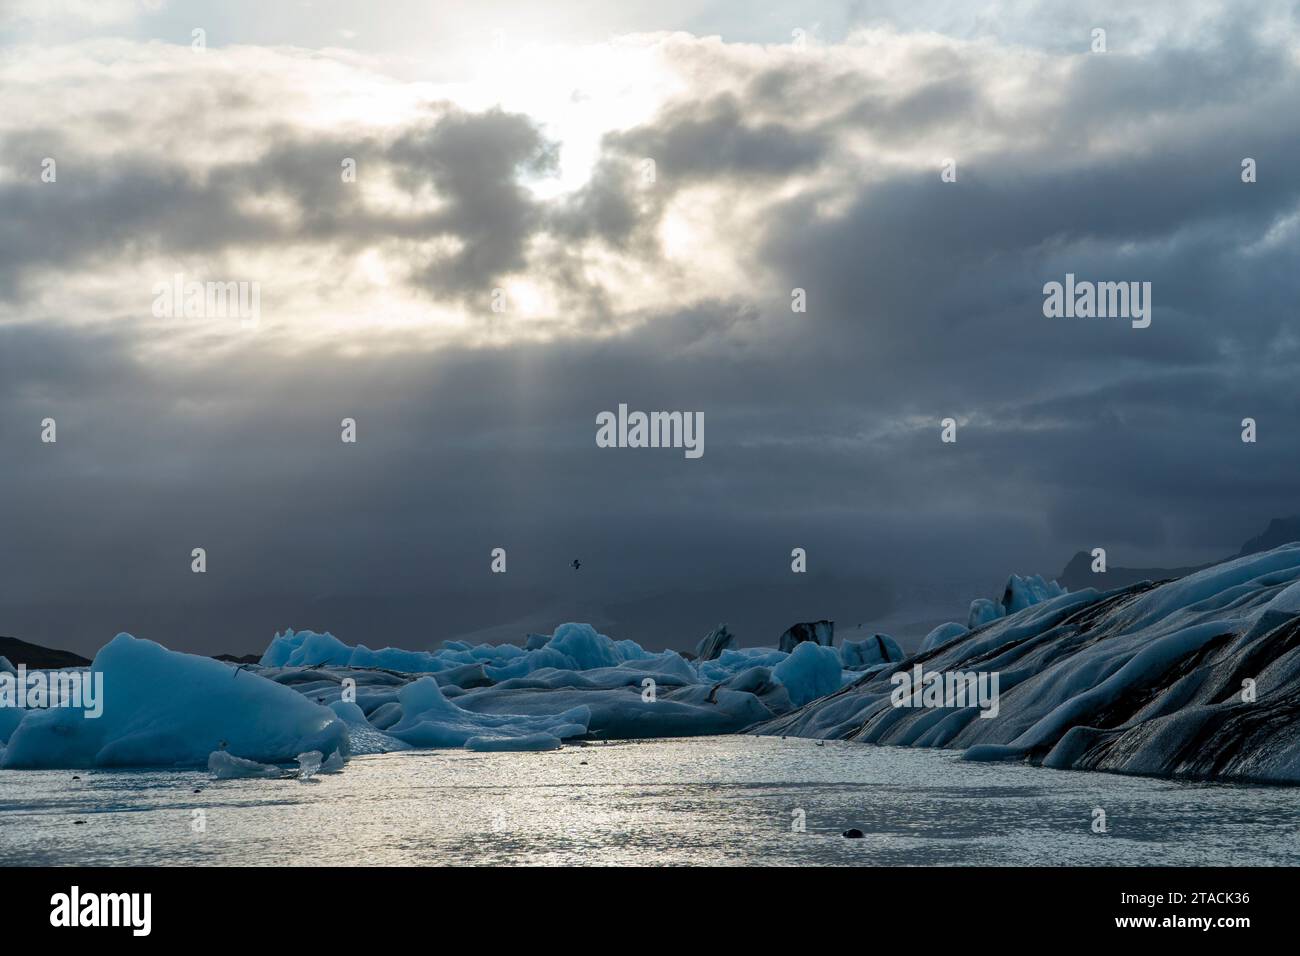 Iceland, Jökulsarlon Gletscher Lagune Stock Photo